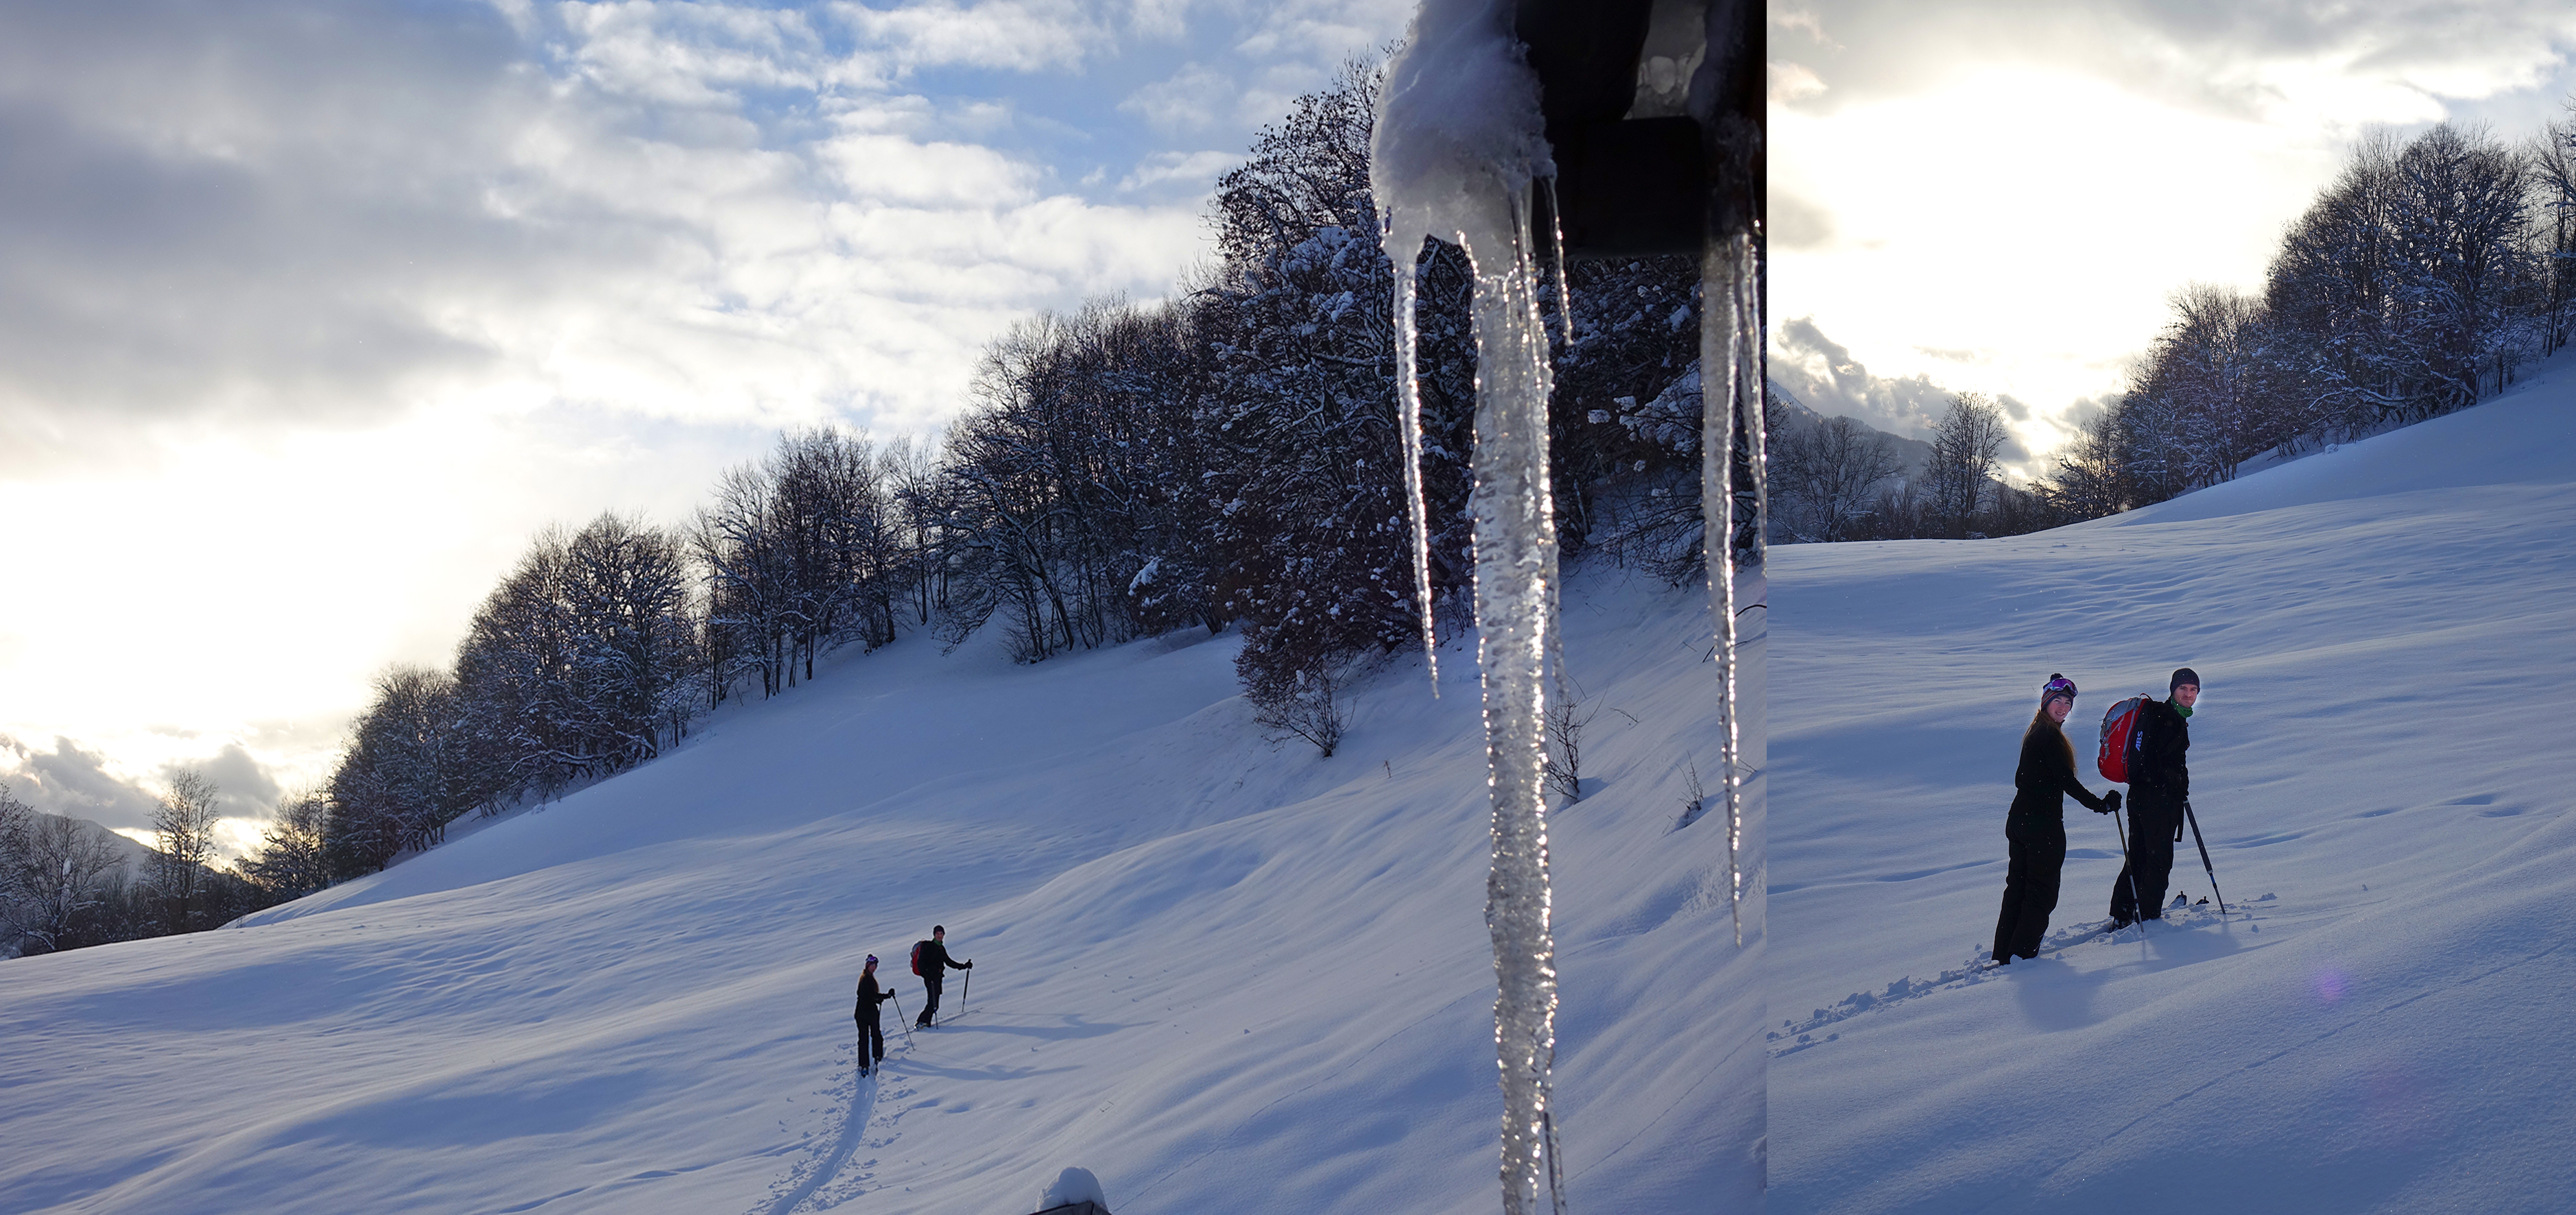 Djan et Léà, skis de randonnée aux pied, partent du chalet des Alpes Djan è Glyâmo